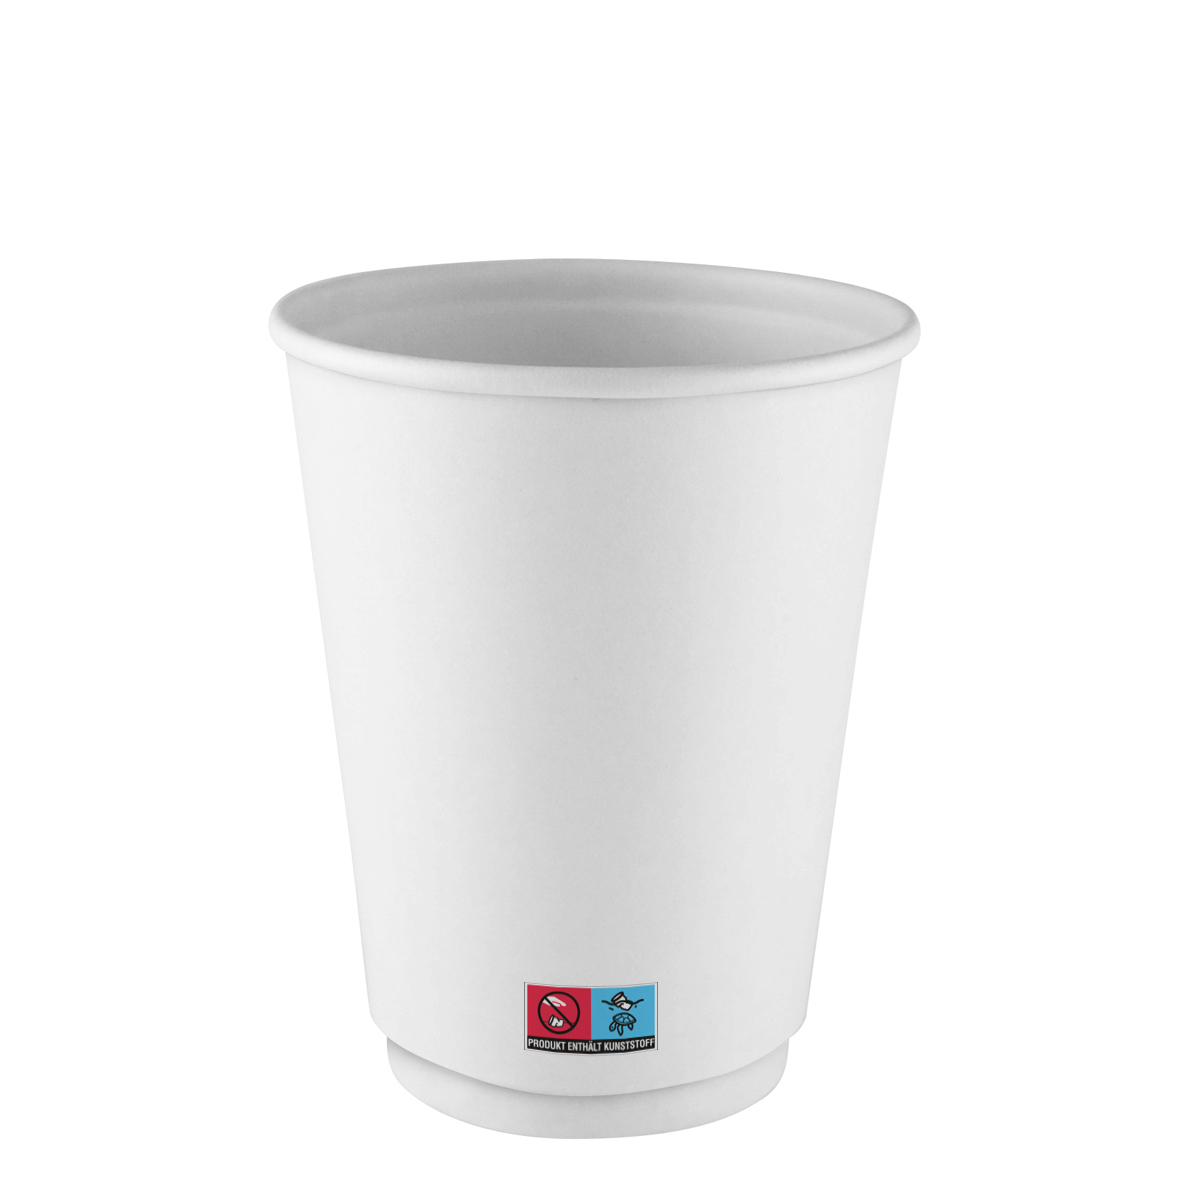 DWE Paper Cup White*, 12 oz.